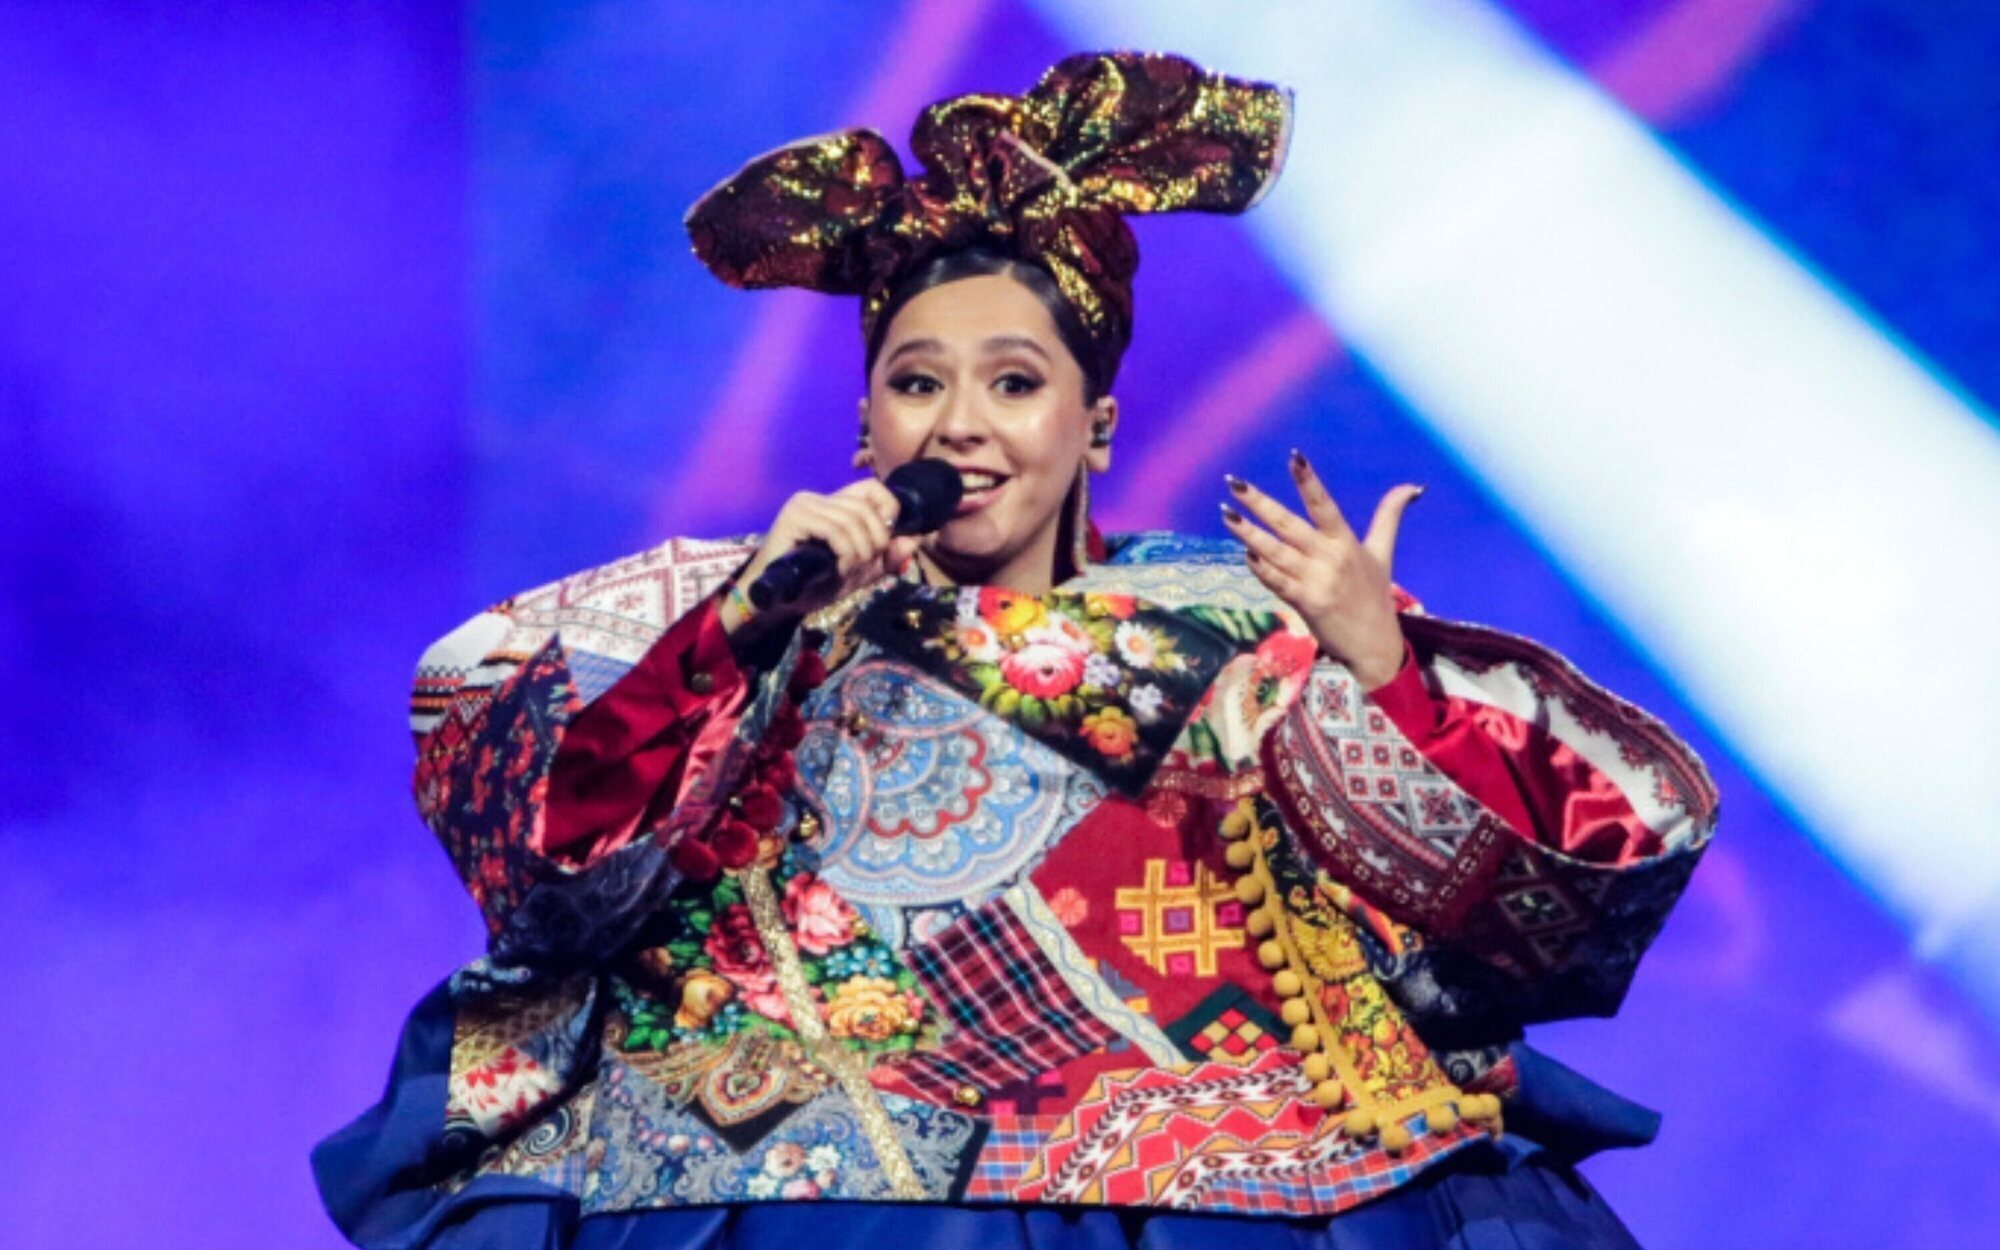 La UER permitirá que Rusia participe en Eurovisión 2022 a pesar de la invasión a Ucrania